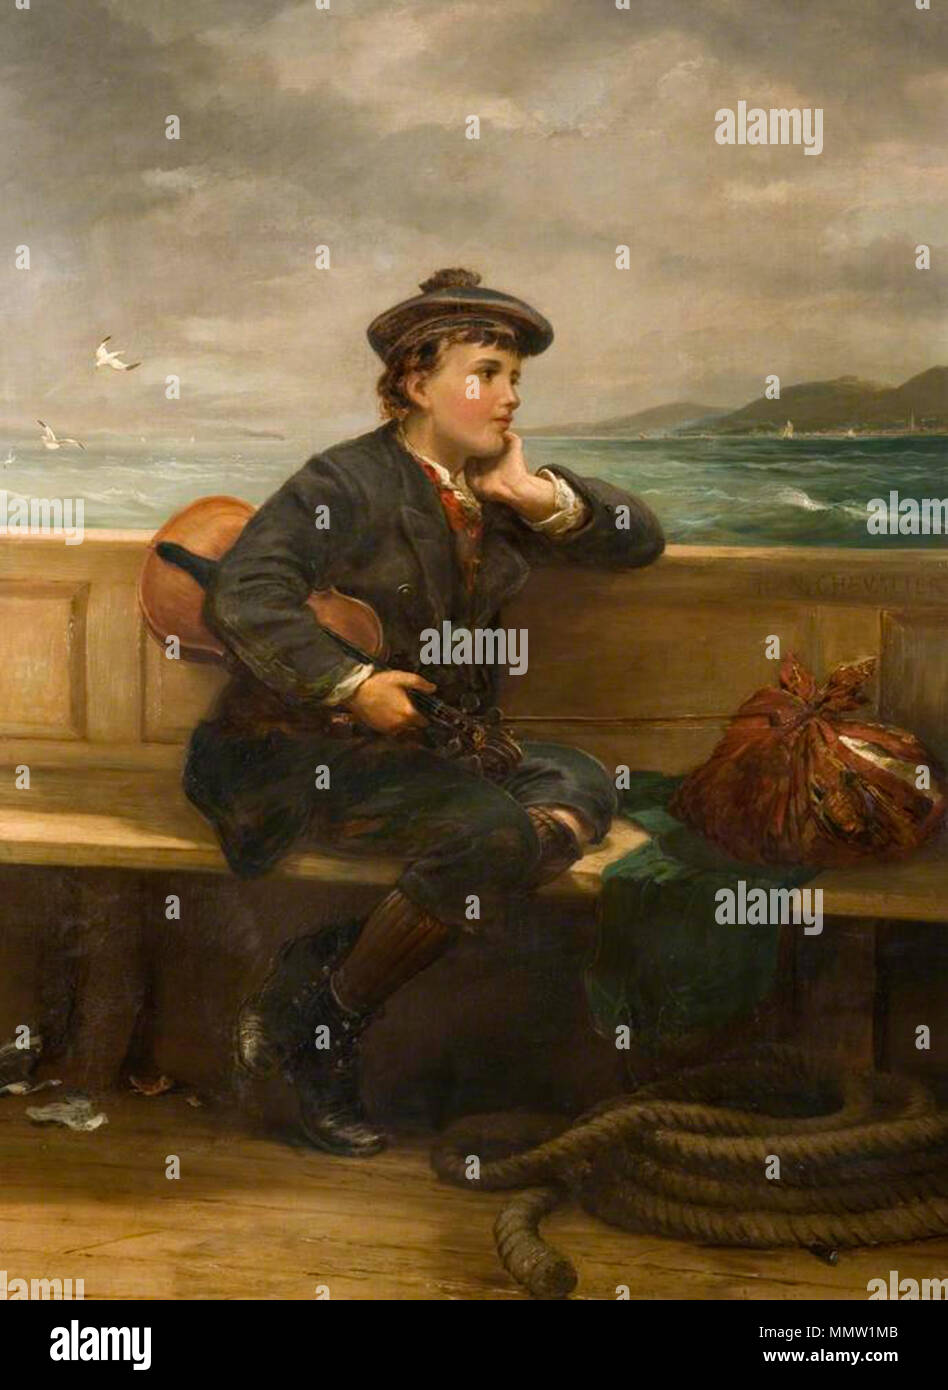 . Inglese: Firmato: Sì Descrizione: In questo lavoro, un giovane ragazzo wistfully guarda oltre il bordo della barca in cui egli è raffigurato. Il suo fascio è la prova della sua partenza, il suo violino è nascosto sotto il suo braccio, ed è forse obliquamente di cui al titolo 'Seeking Fortune". Indossa un cappello scozzese ed è eventualmente lasciando Glasgow. Nel suo indirizzamento del tema dell'emigrazione, il lavoro ha molto in comune con la Ford Madox Brown's l'ultimo dell'Inghilterra, 1852-5. Esposta per la prima volta nel 1887, è stato anche suggerito che il dipinto raffigura B.L Farjeon, un amico dell'artista, che nel 1854, Foto Stock